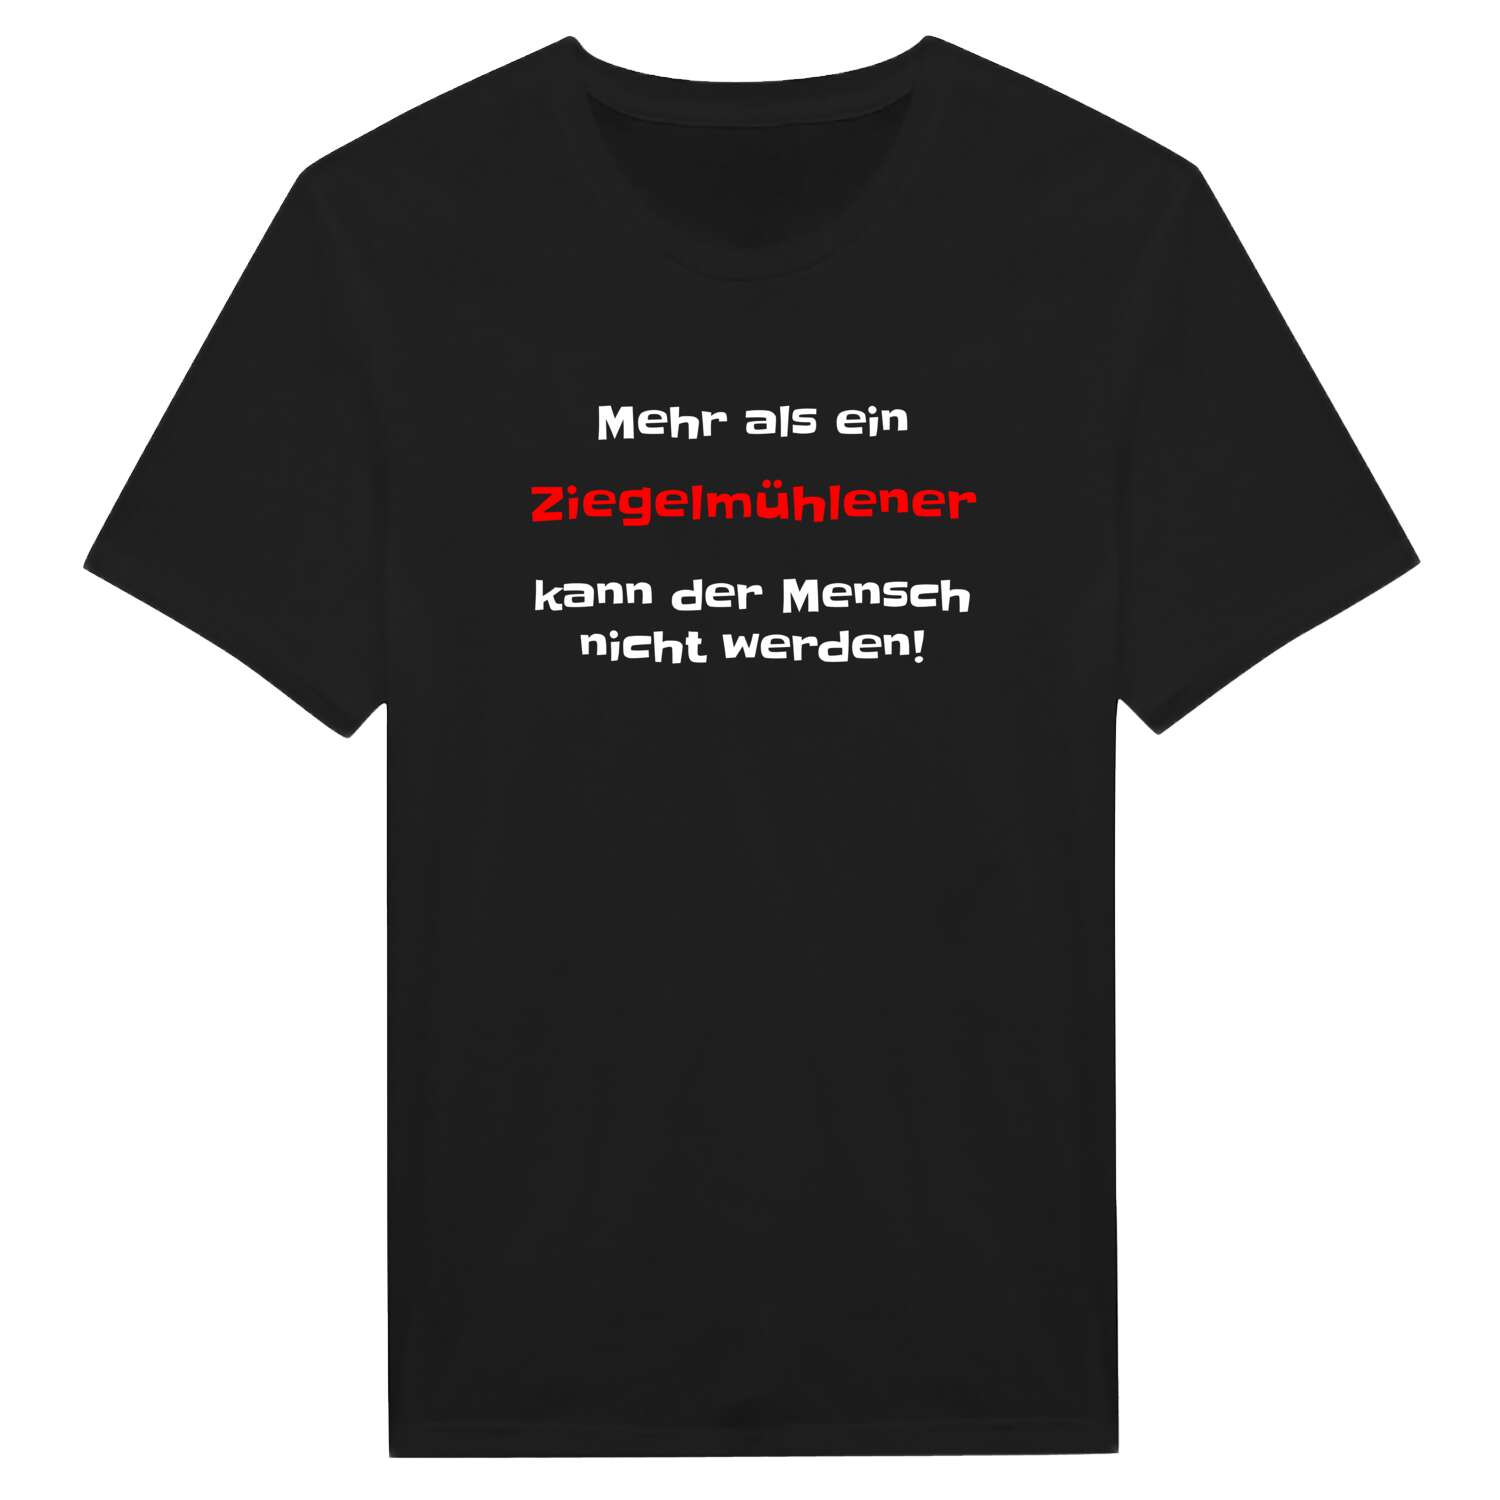 Ziegelmühle T-Shirt »Mehr als ein«